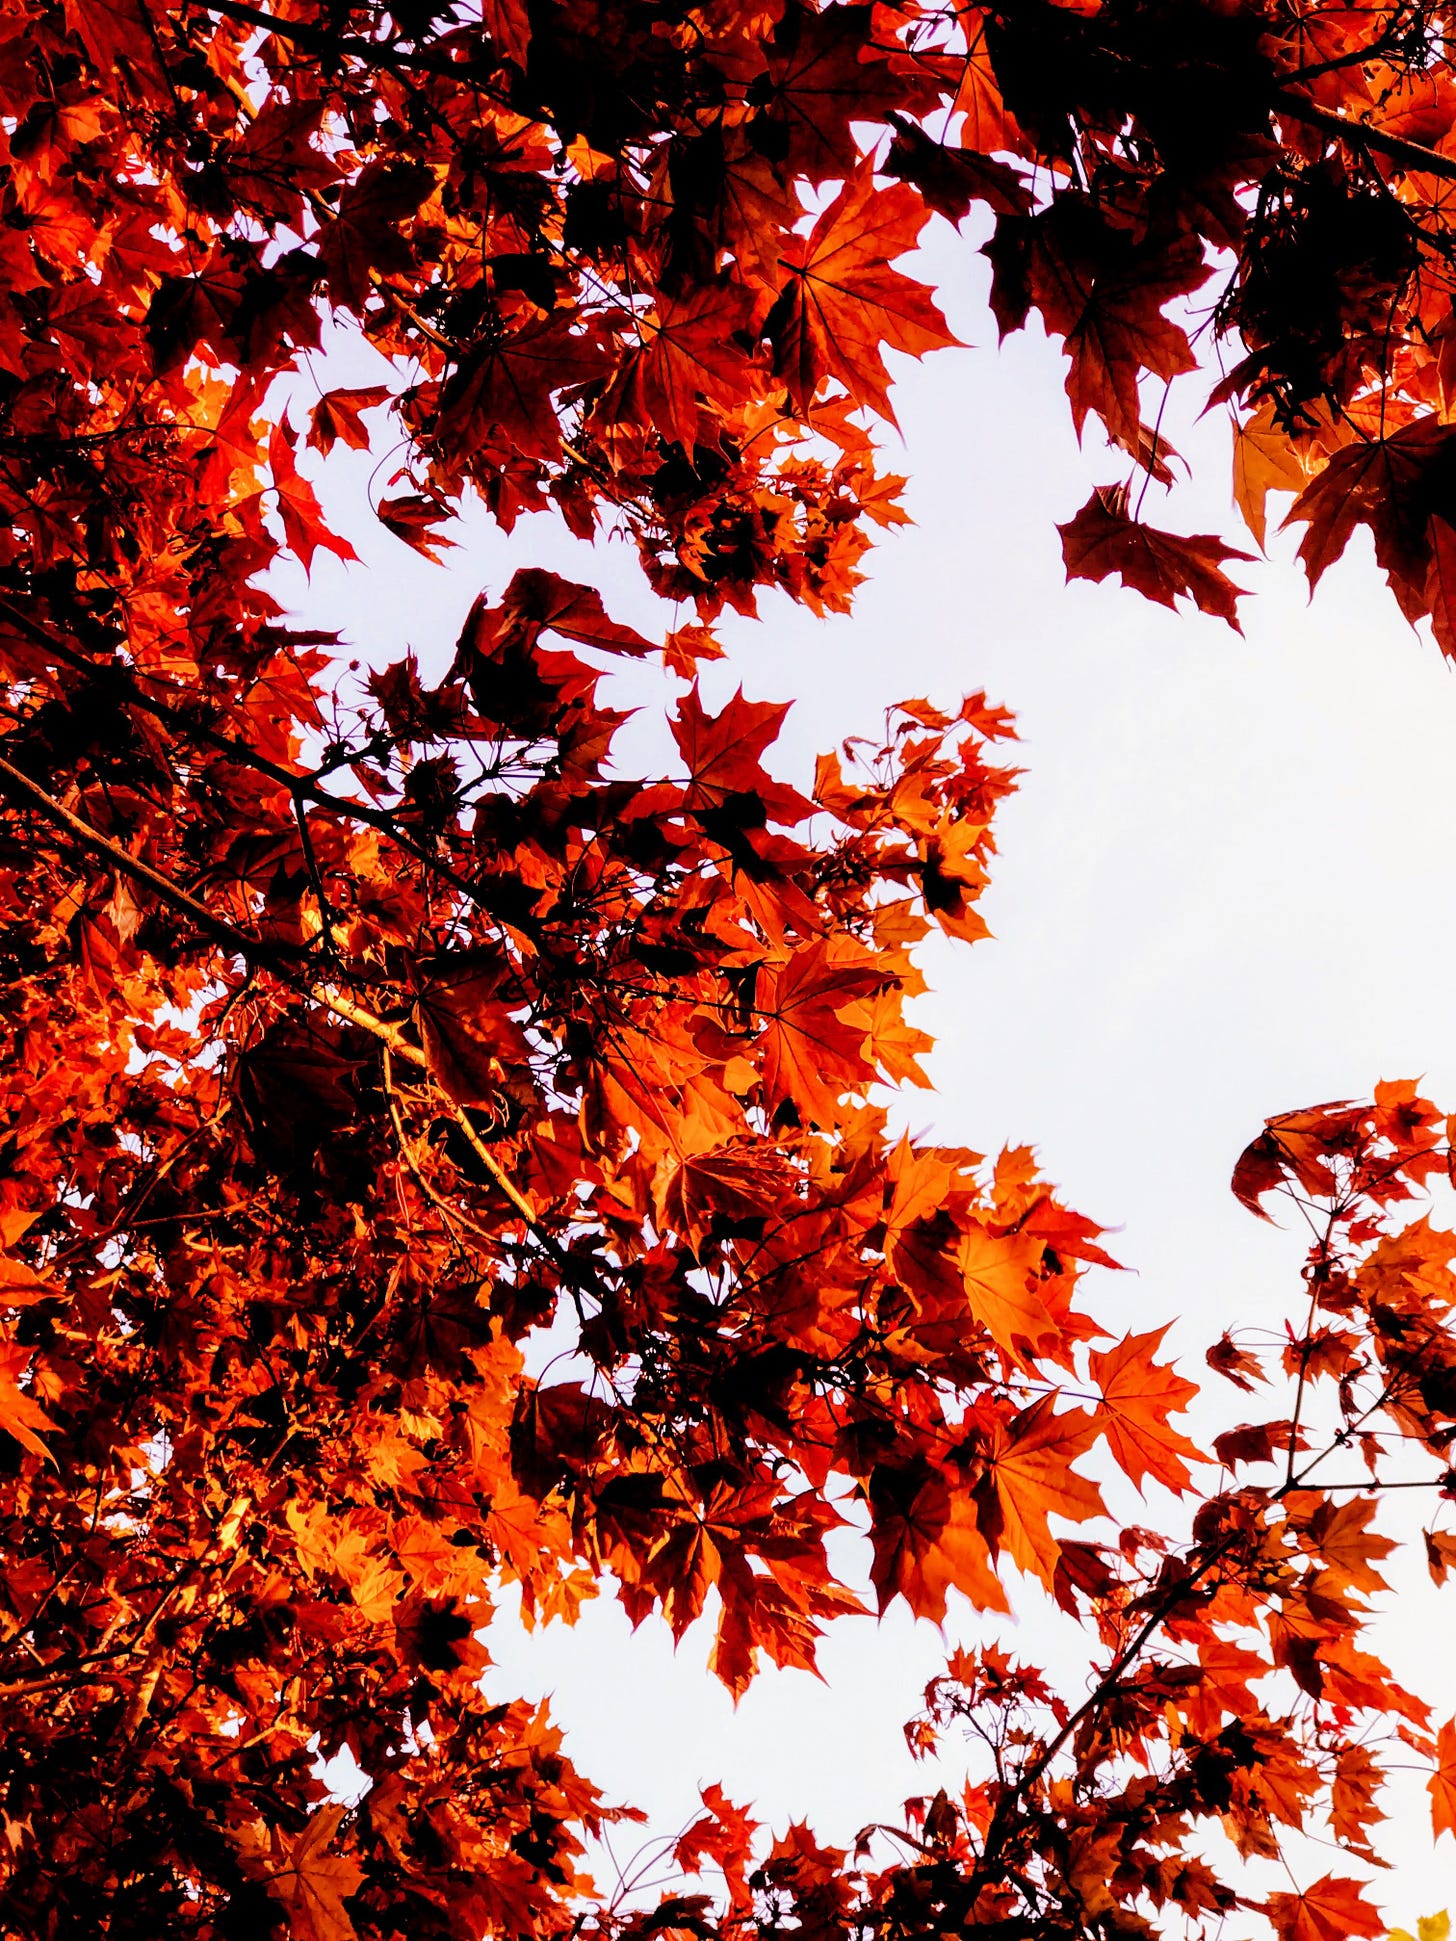 A maple tree in autumn is dark orange